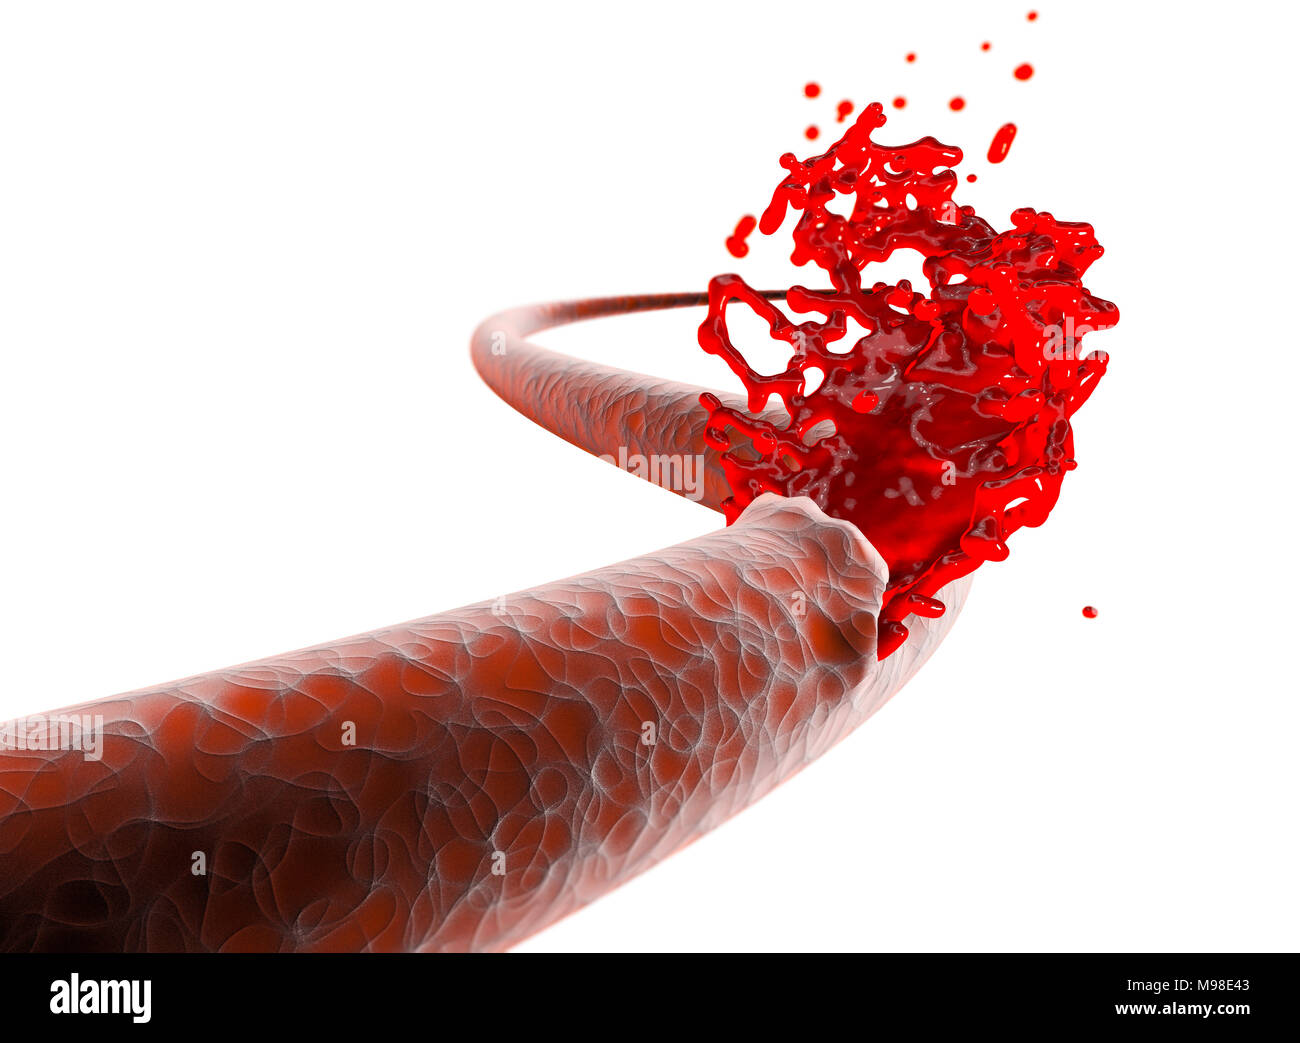 Vene, Arterie, Bruch Schneiden Blut Blutung. Innere Blutungen, Schnitt von einer Vene und Beenden von Blut Stockfoto